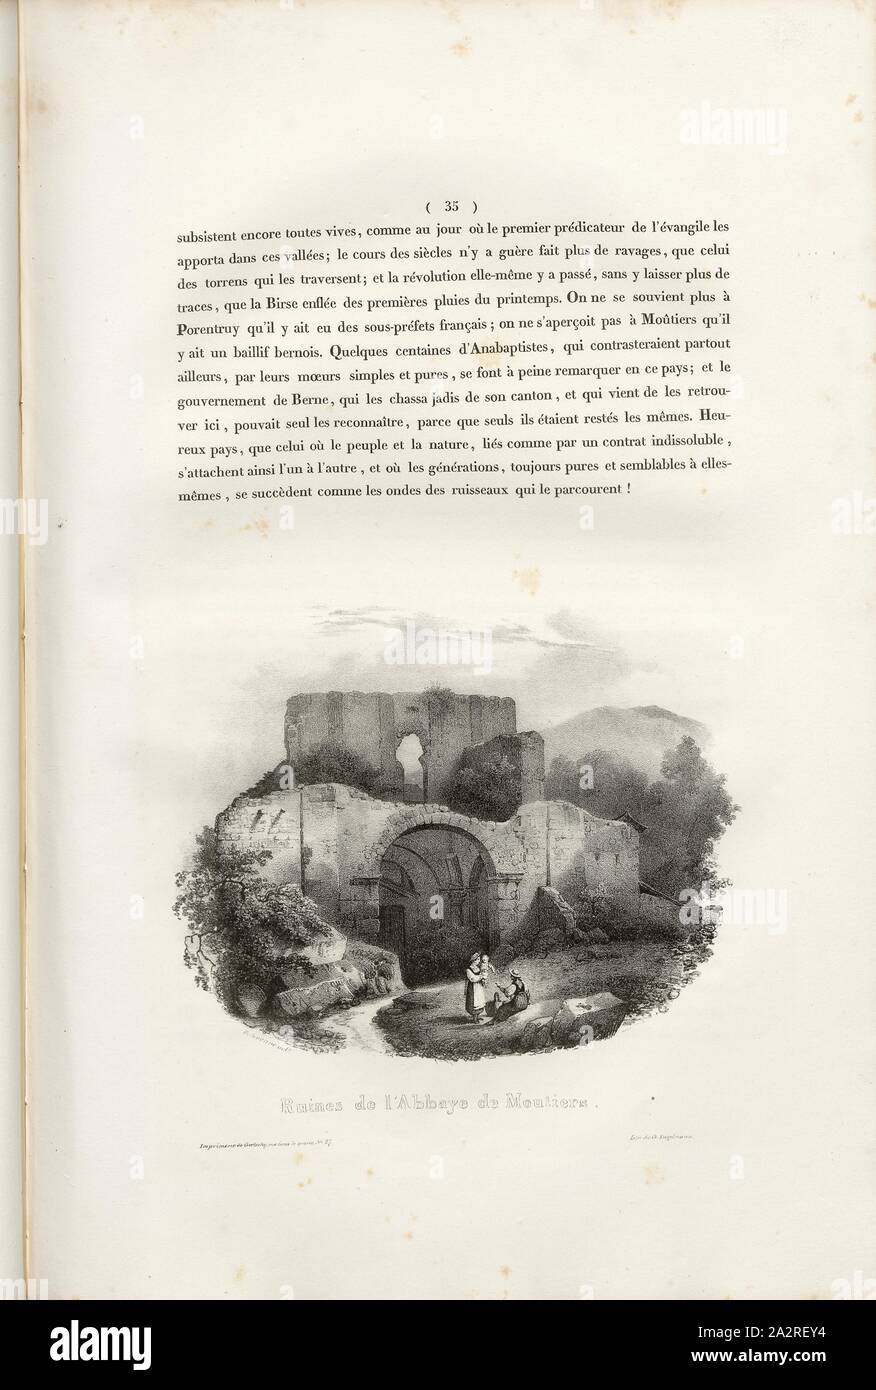 Ruins of the Abbey of Moutiers, Monastery ruins near Moutiers, signed: Villeneuve, G. Engelmann, lithograph, pl. 3, p. 35 (vol. 2, part 2), Villeneuve, M. (delt.); Engelmann, Godefroy (lith.), 1823, Hilaire Léon Sazerac, Godefroy Engelmann: Lettres sur la Suisse (...). Paris: [s.n.], 1823-1832 Stock Photo